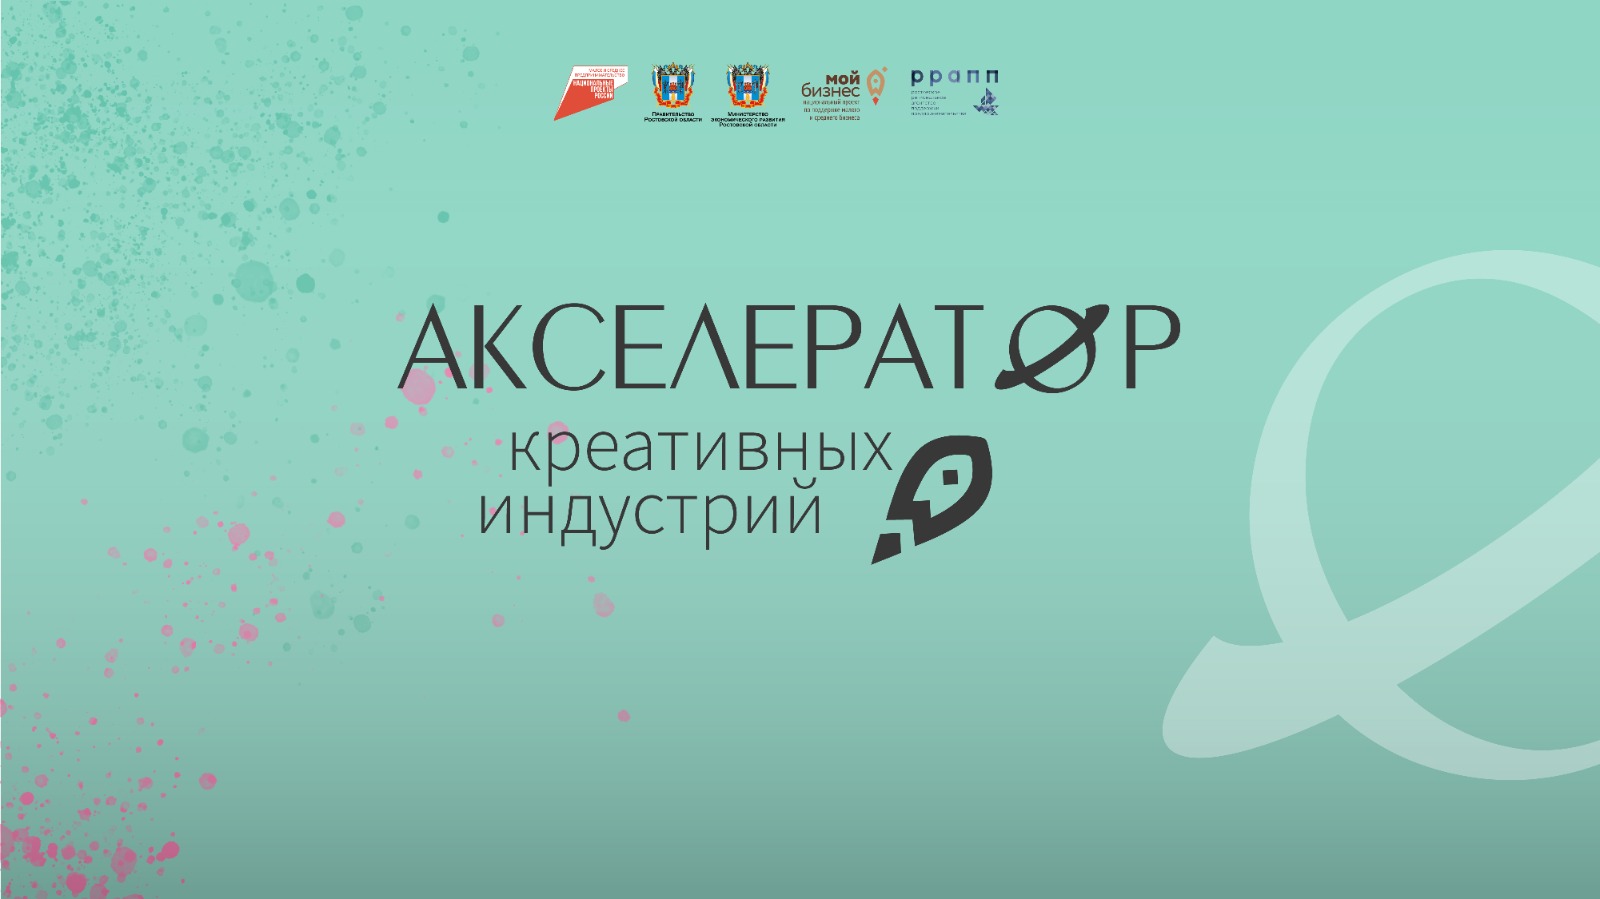 В Ростовской области стартовал прием заявок в Акселератор креативных индустрий